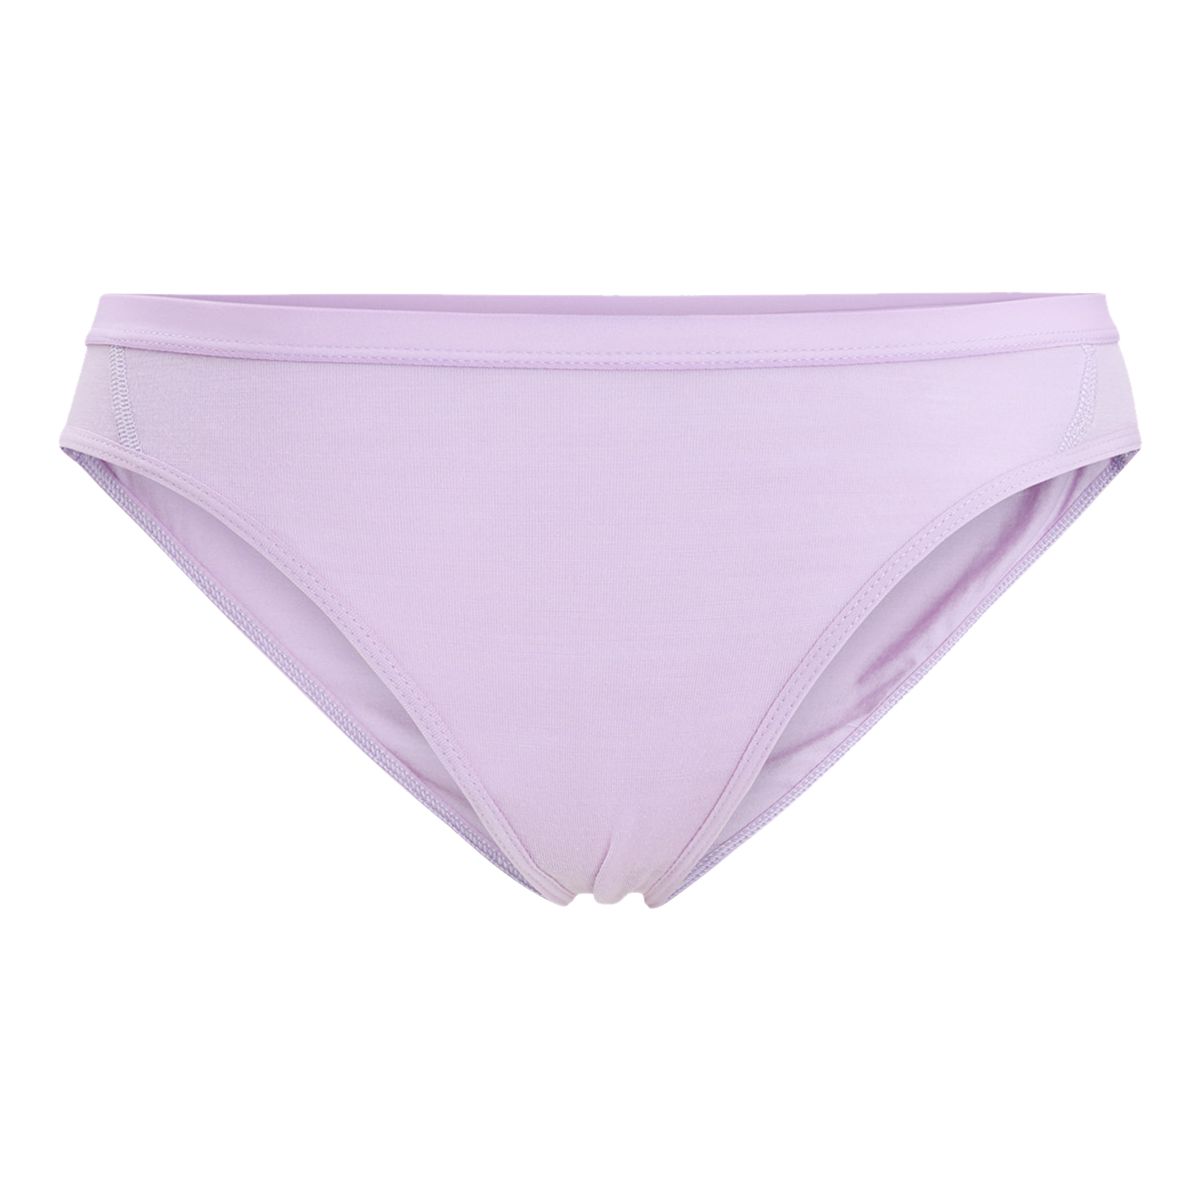 Icebreaker Women's Siren Bikini Underwear -Online Only